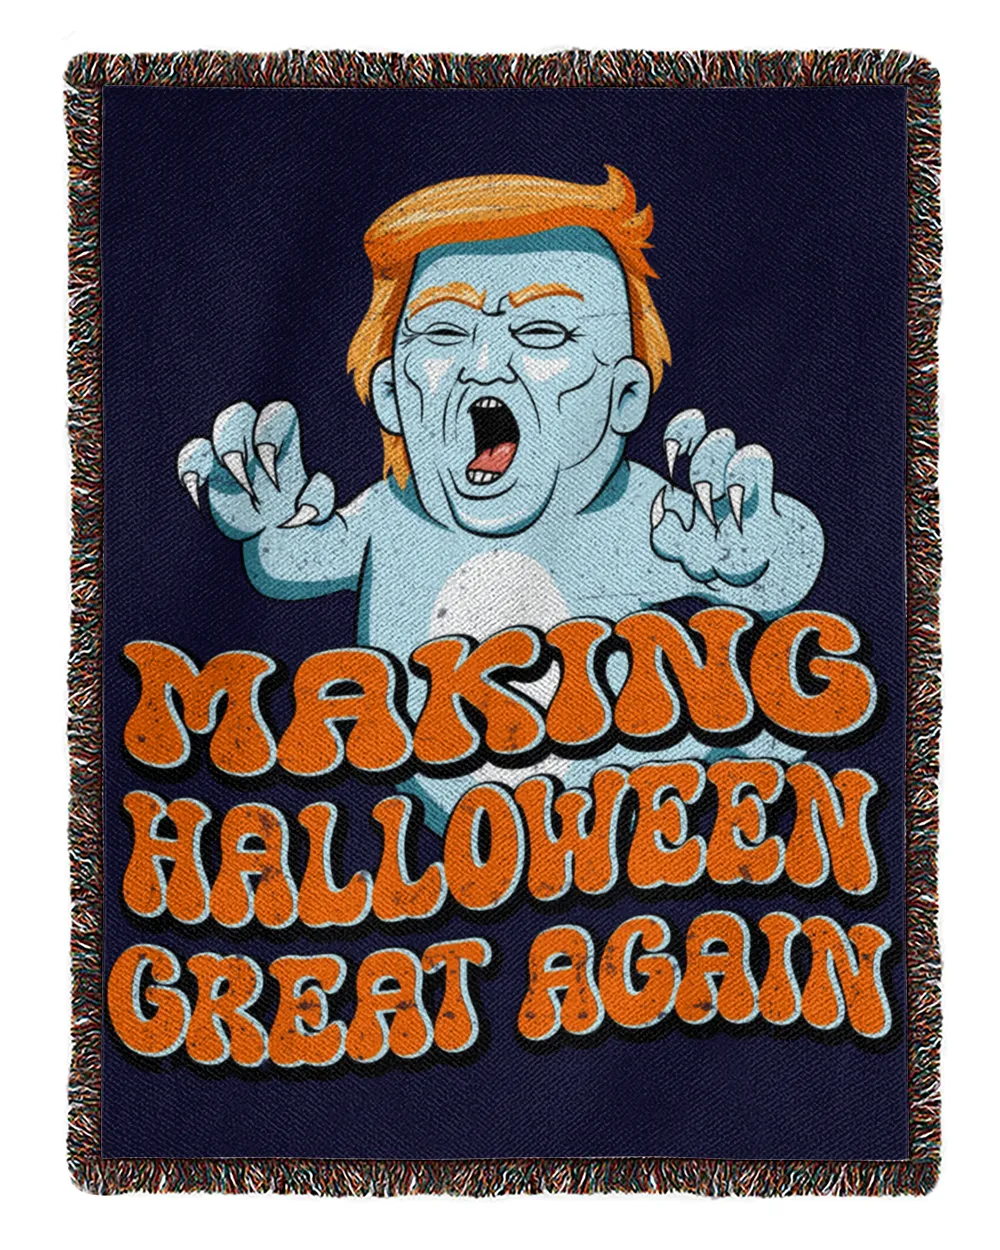 Making Halloween Great Again Trump Ghost Distressed Groovy Long Sleeve Tank Tops Hoodies